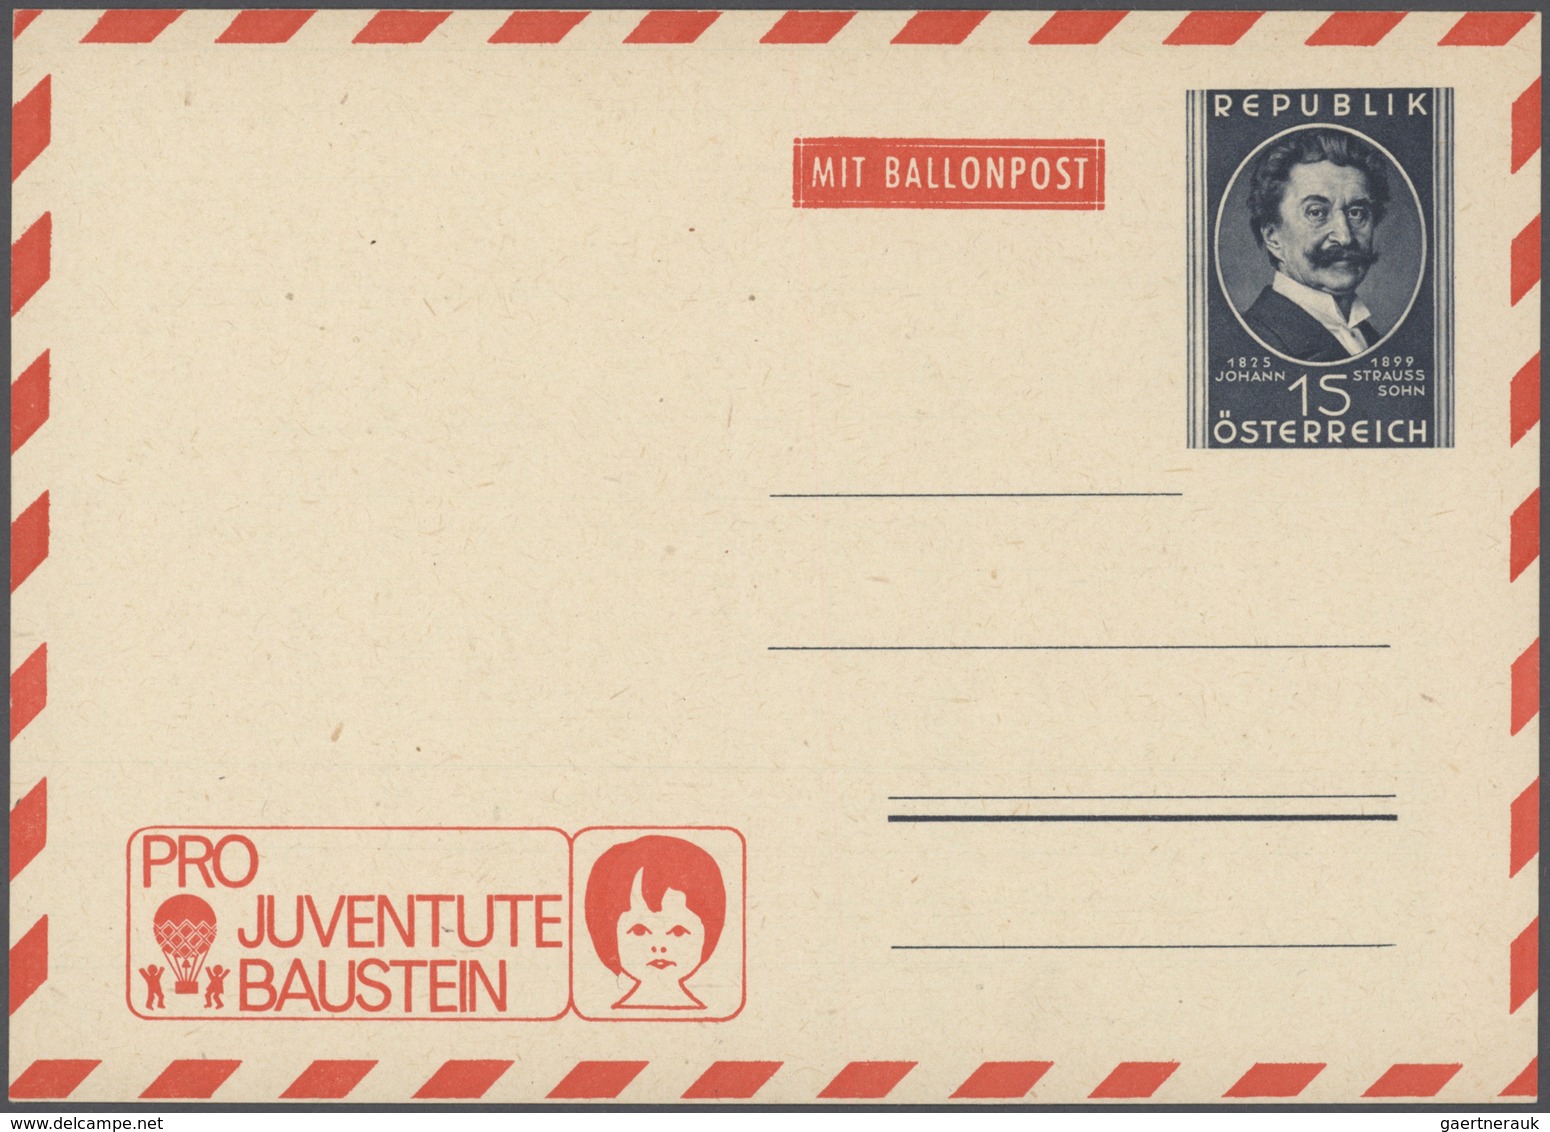 Ballonpost: 1948/1988, Österreich, sehr gehaltvolle Sammlung der Pro Juventute Kinderdorf Ballonpost